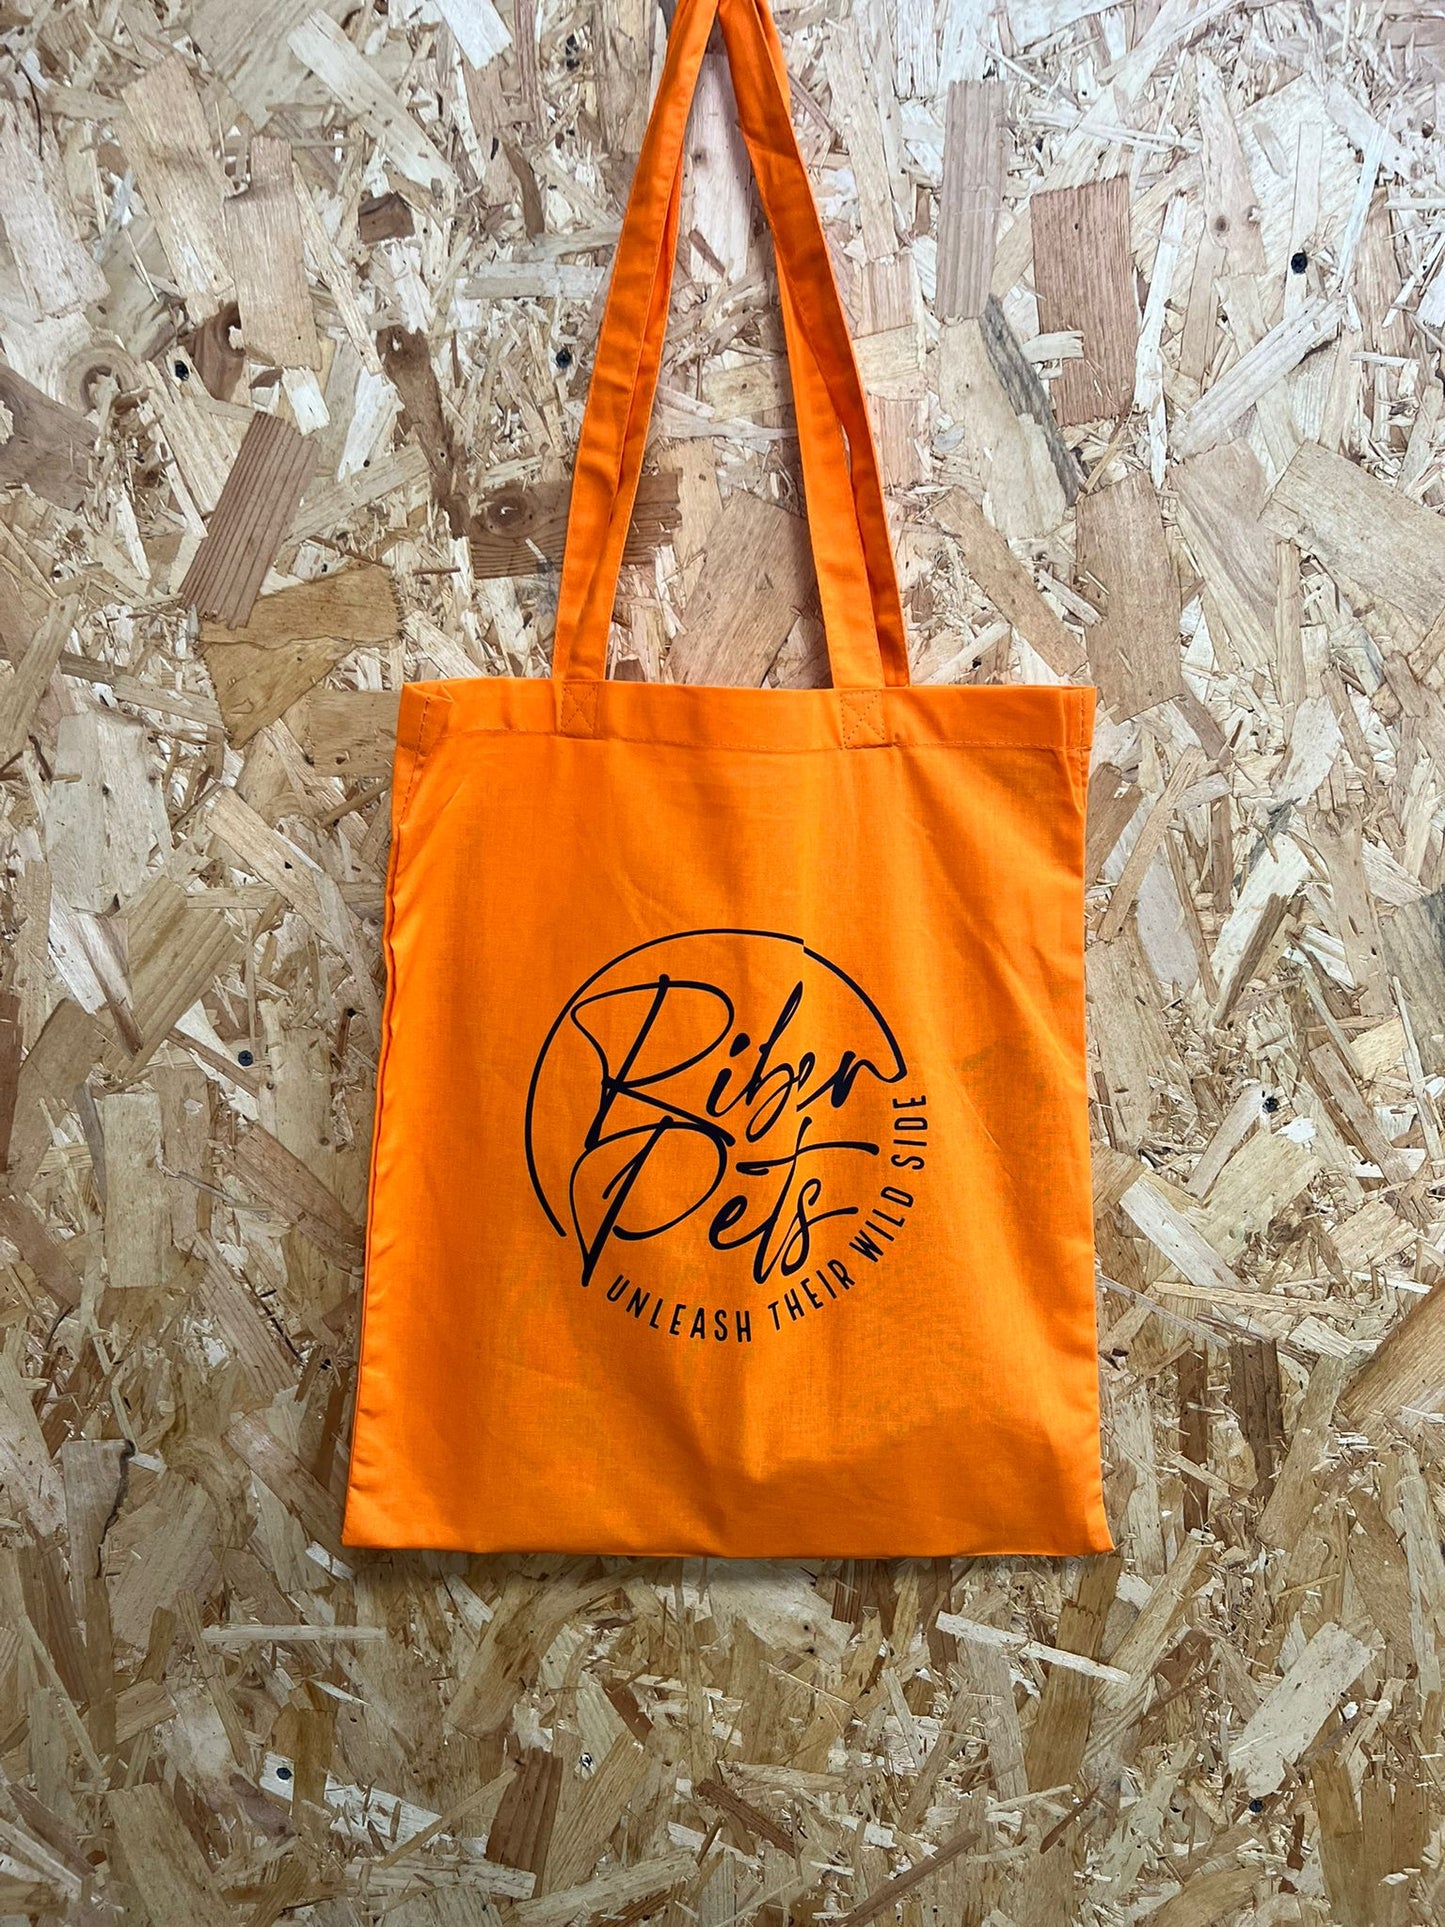 Riber Pets Orange Tote Bag